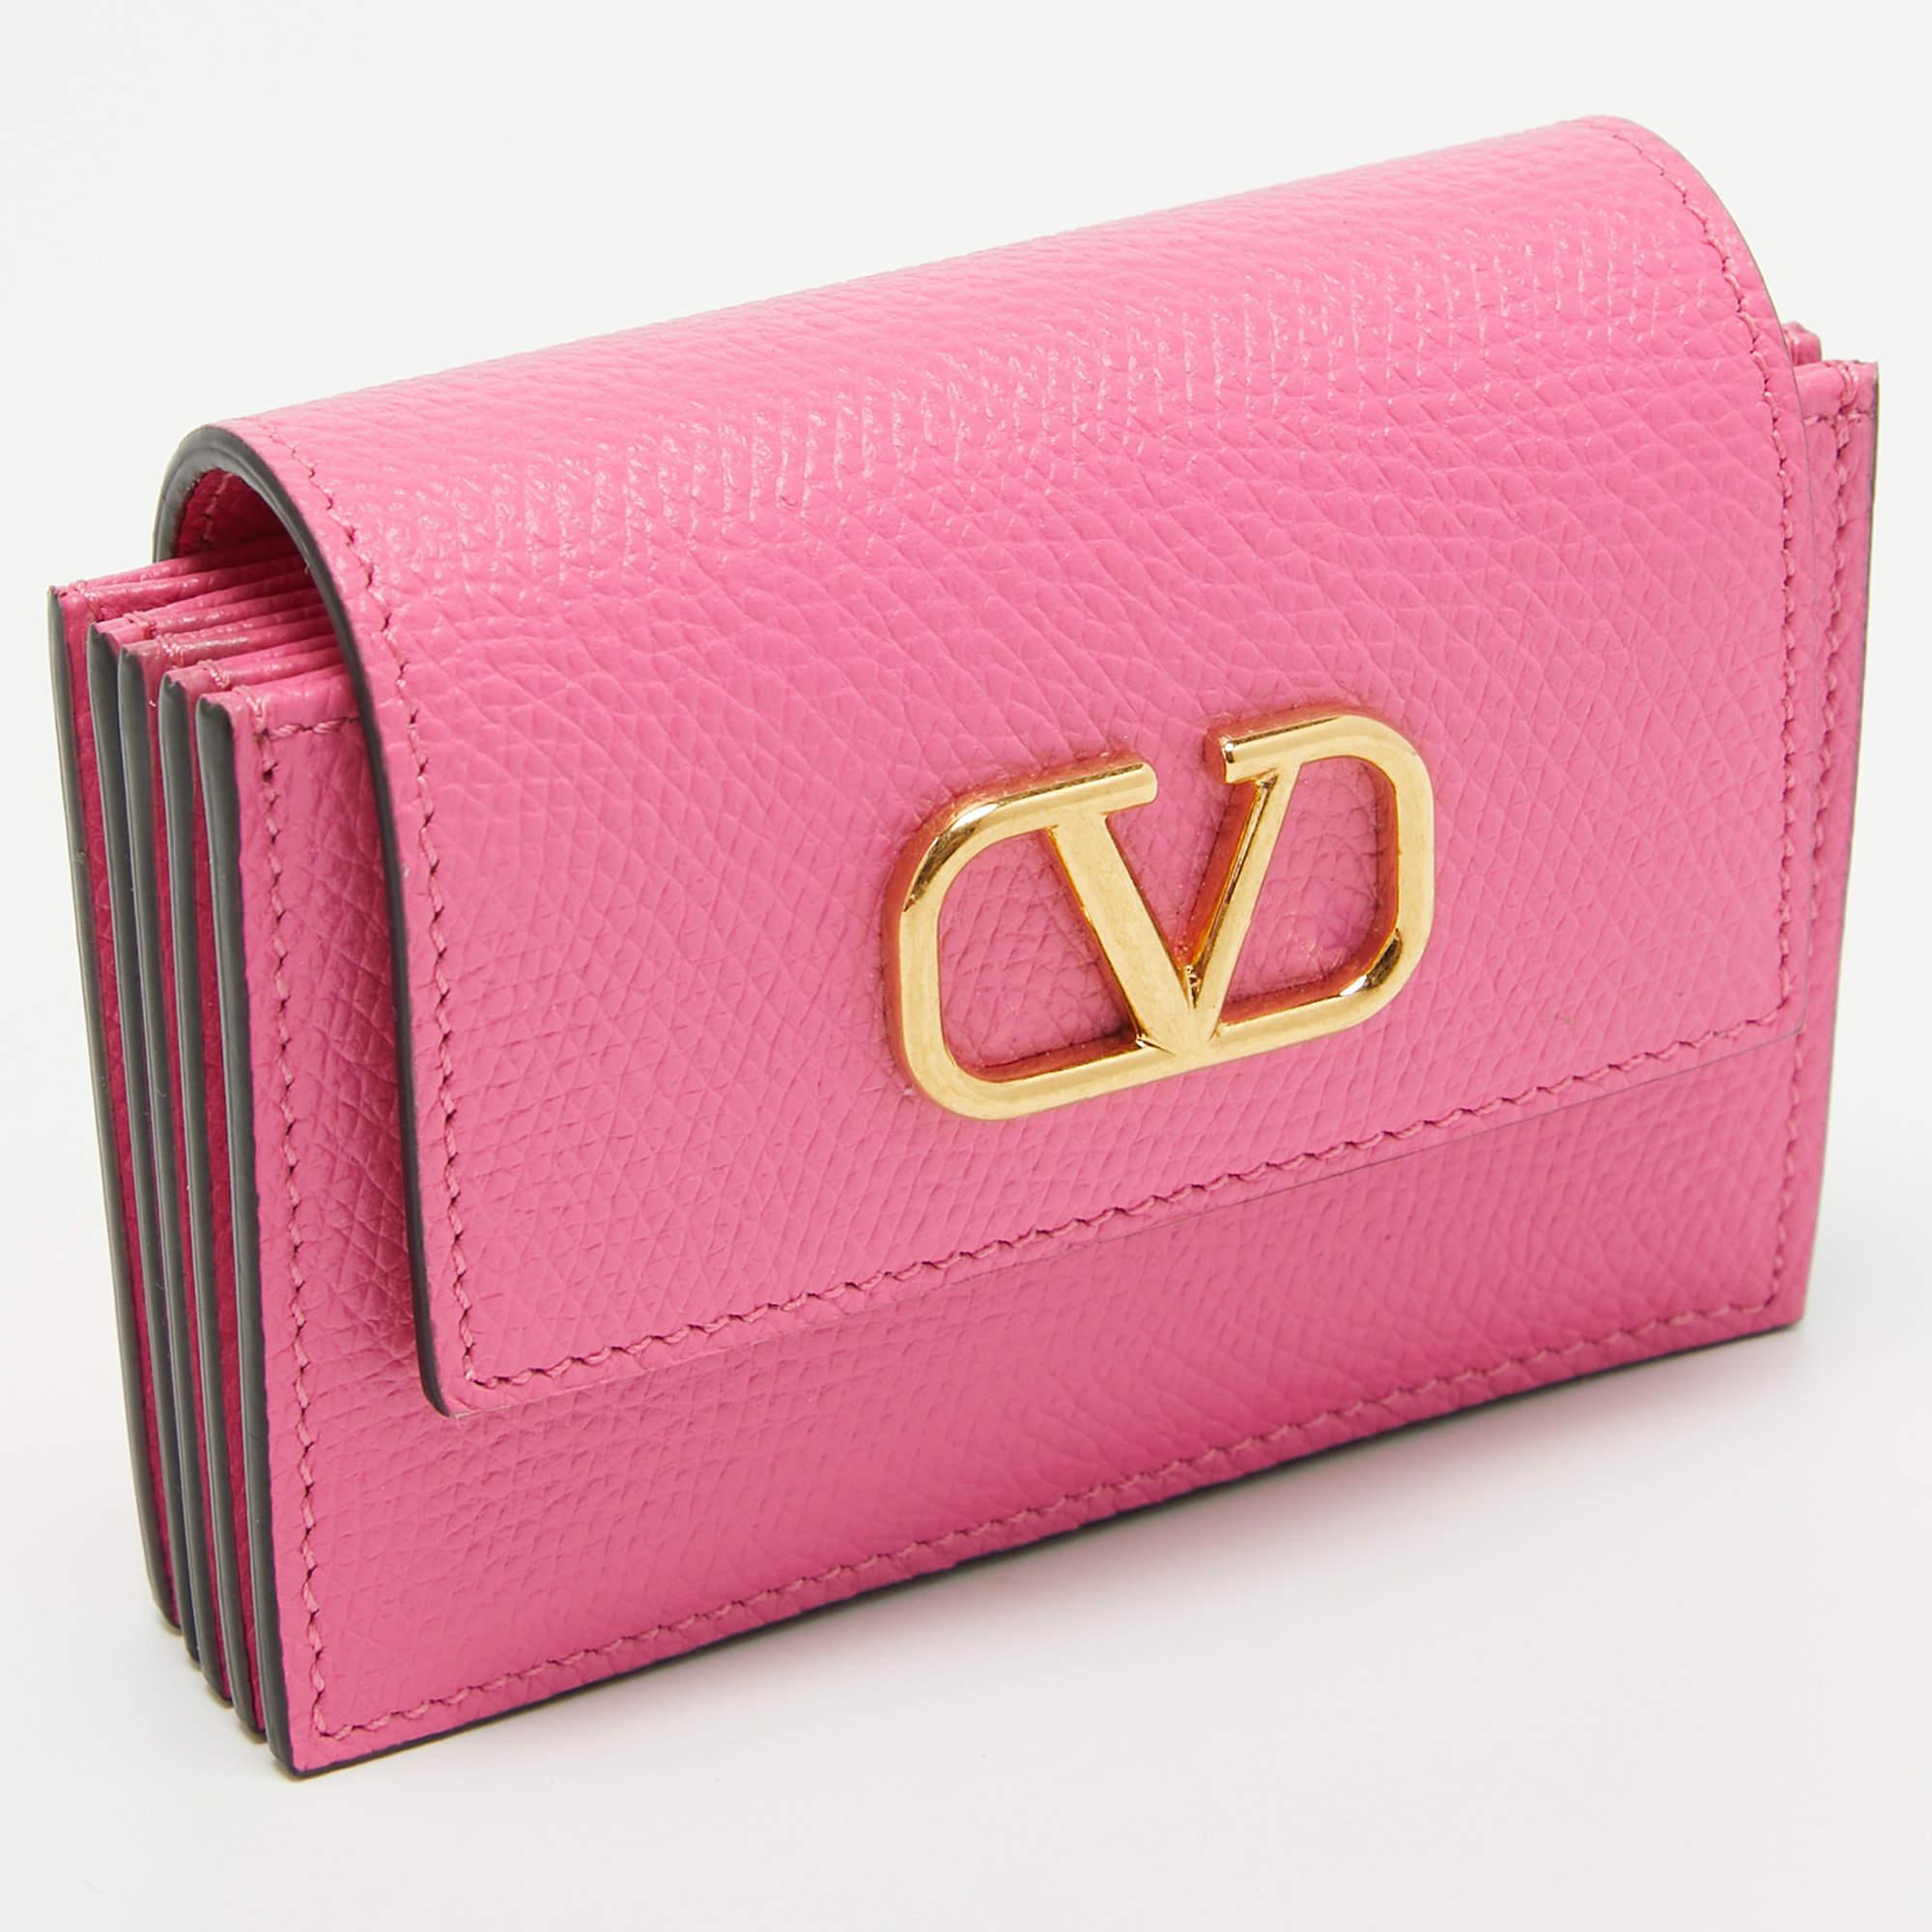 Das Valentino Kartenetui ist ein praktisches Accessoire, das durch das berühmte VLogo hervorgehoben wird. Dieses kompakte und stilvolle Stück eignet sich perfekt für die Organisation und Aufbewahrung Ihrer Karten und Ihres Bargeldes mit einem Hauch